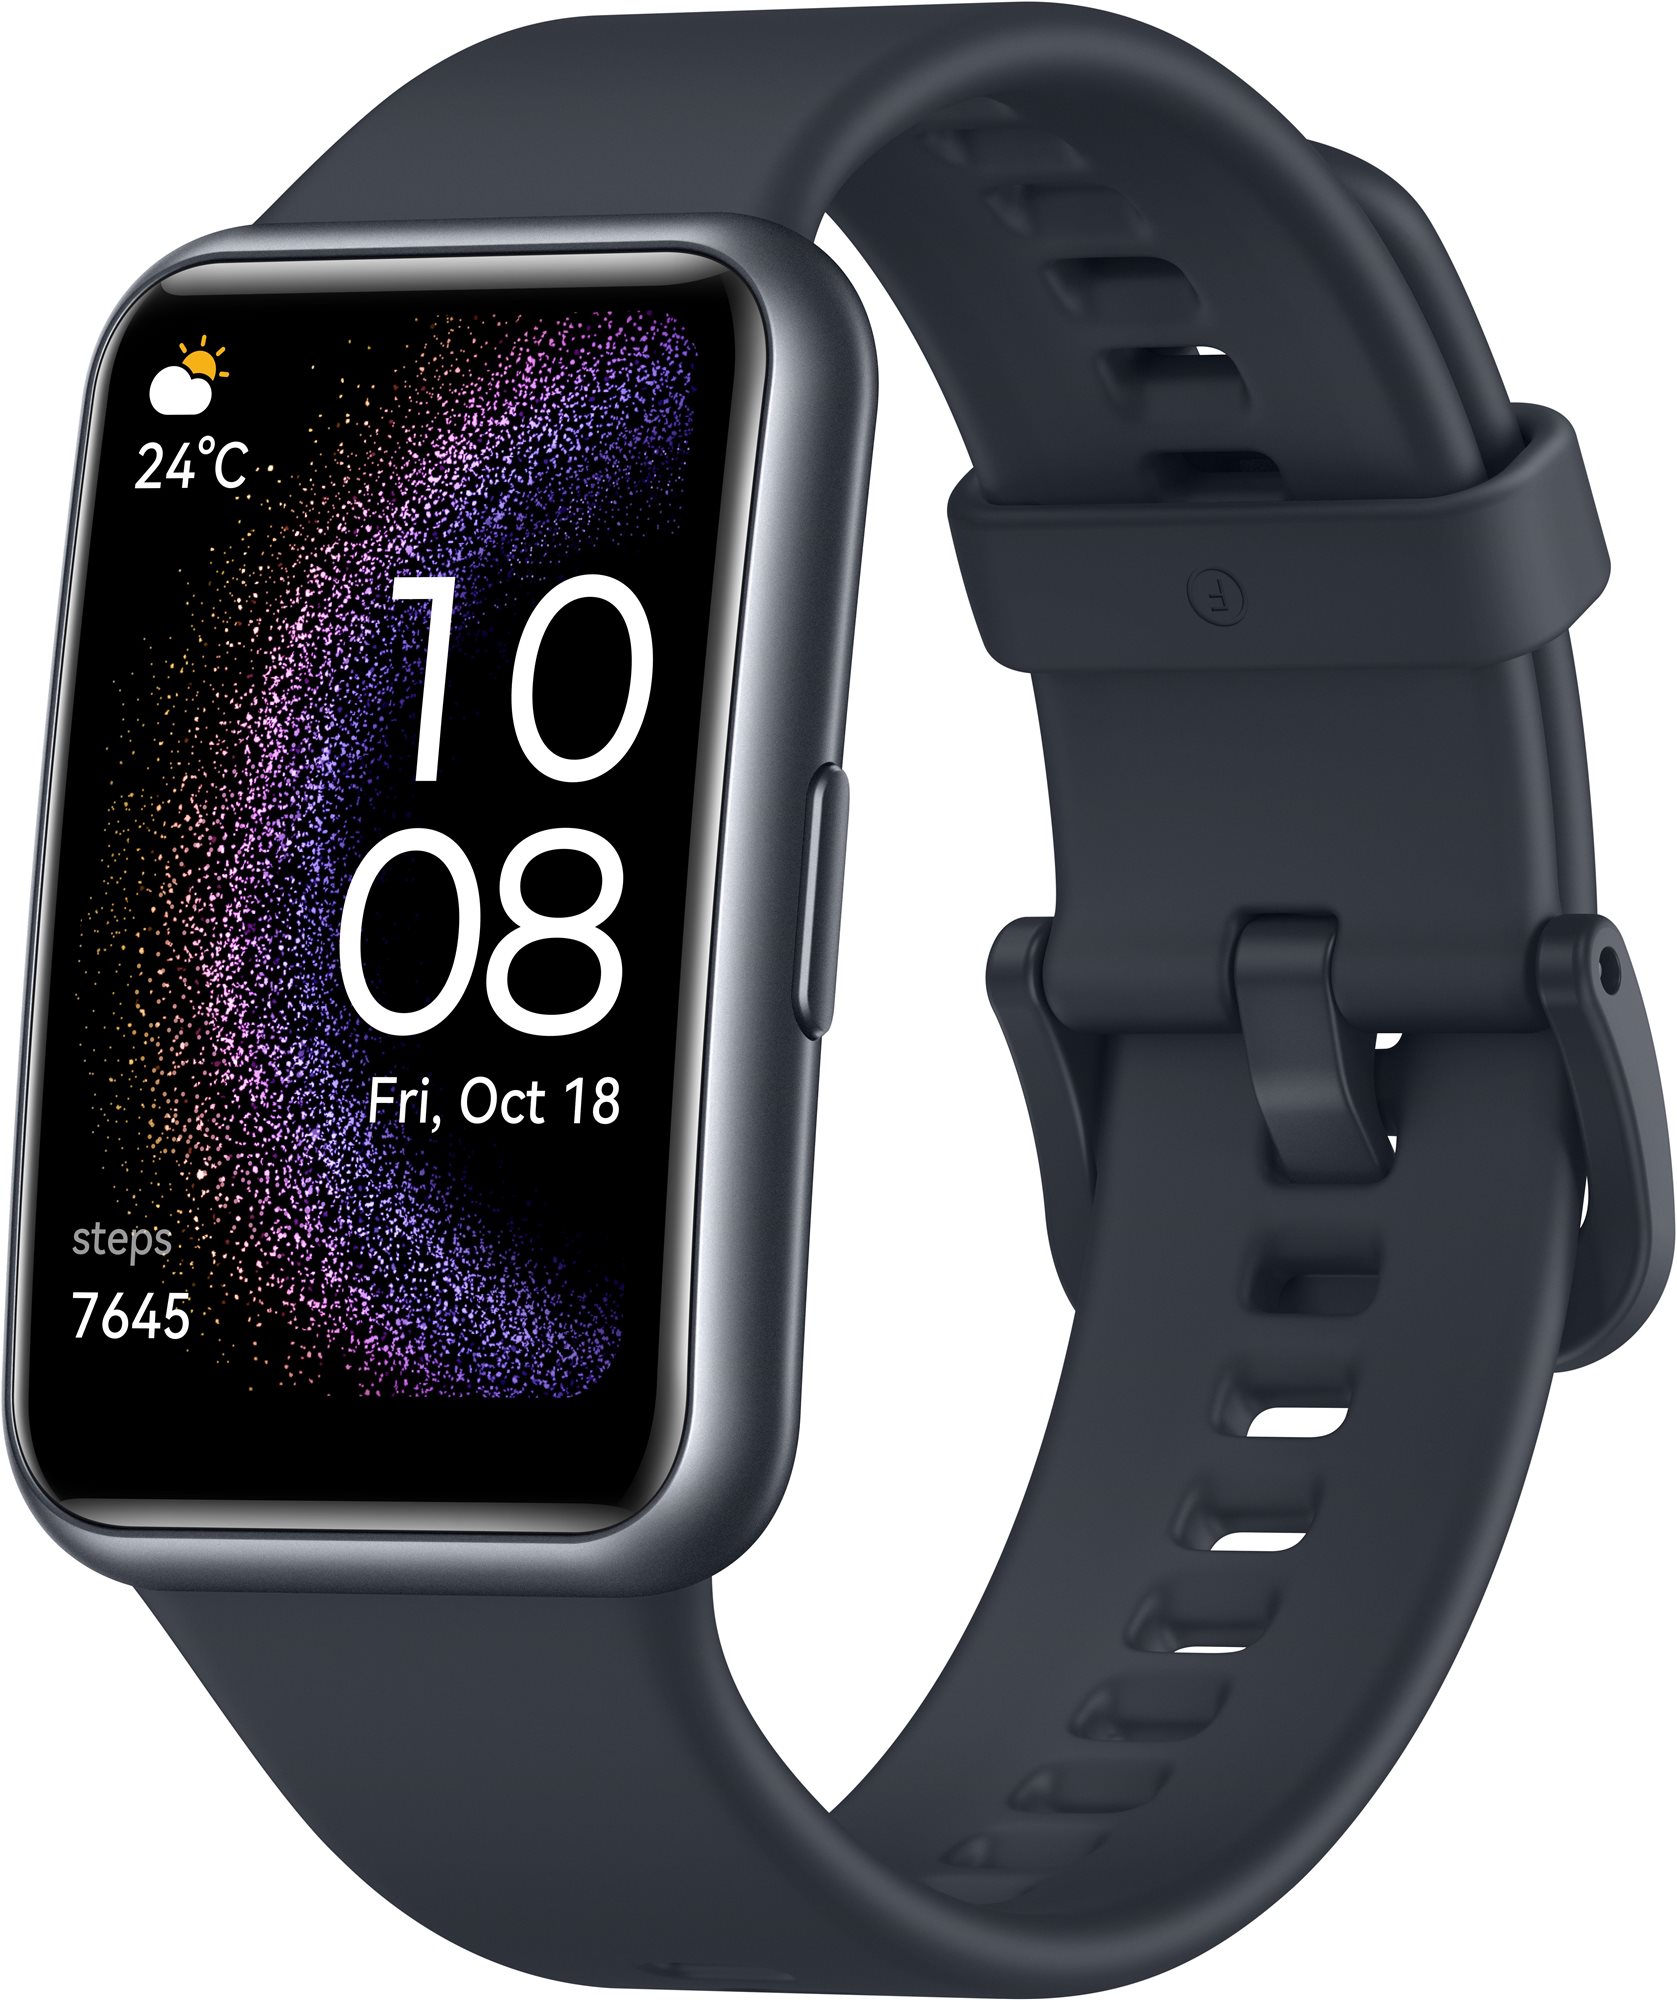 Okoskarkötő Huawei Watch Fit SE Starry Black